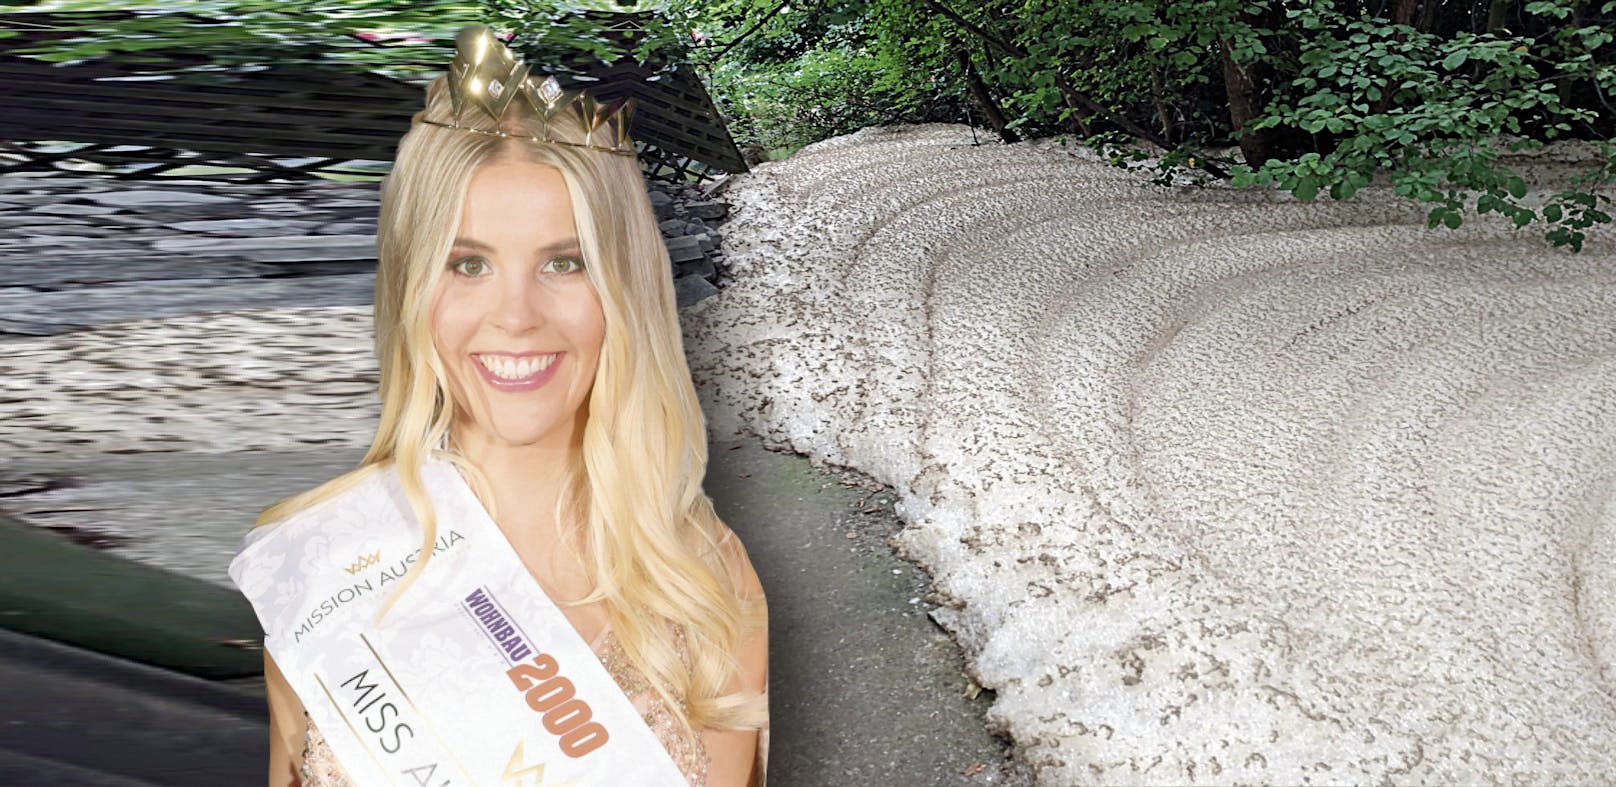 Fäkalien-Gestank störte Party für neue Miss Austria